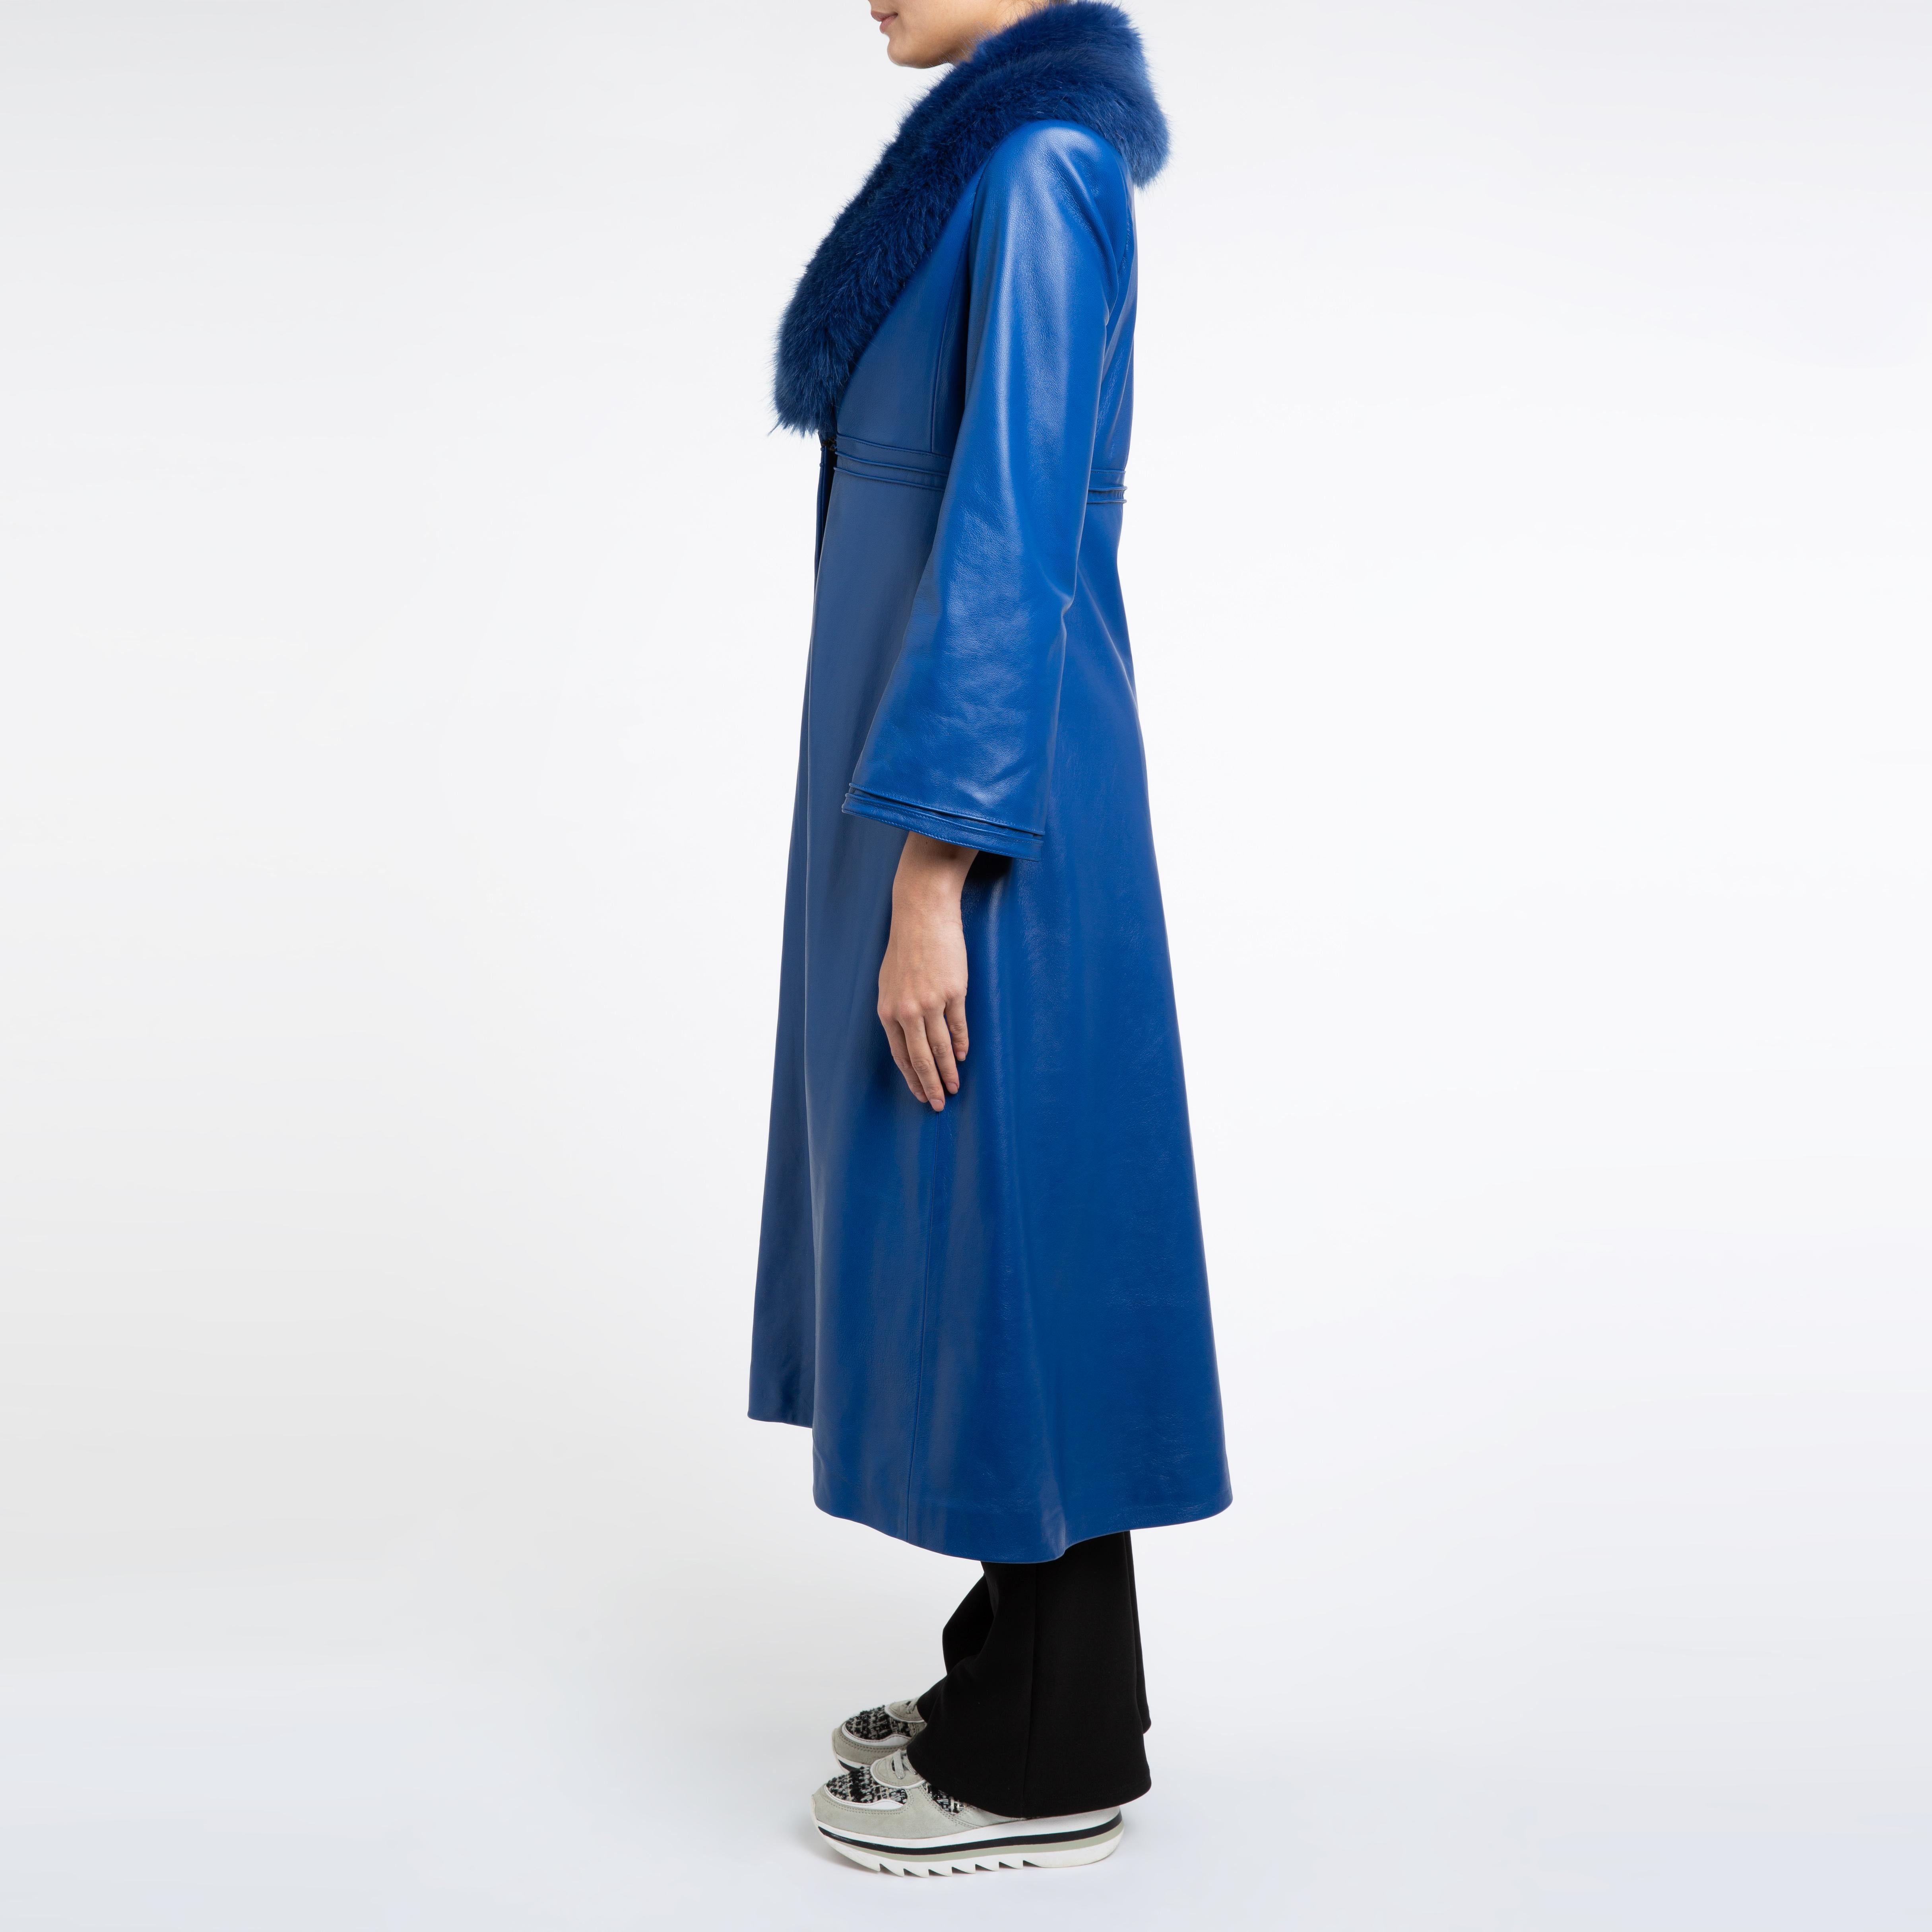 Women's Verheyen London Edward Leather Coat in Blue with Faux Fur - Size uk 12 For Sale